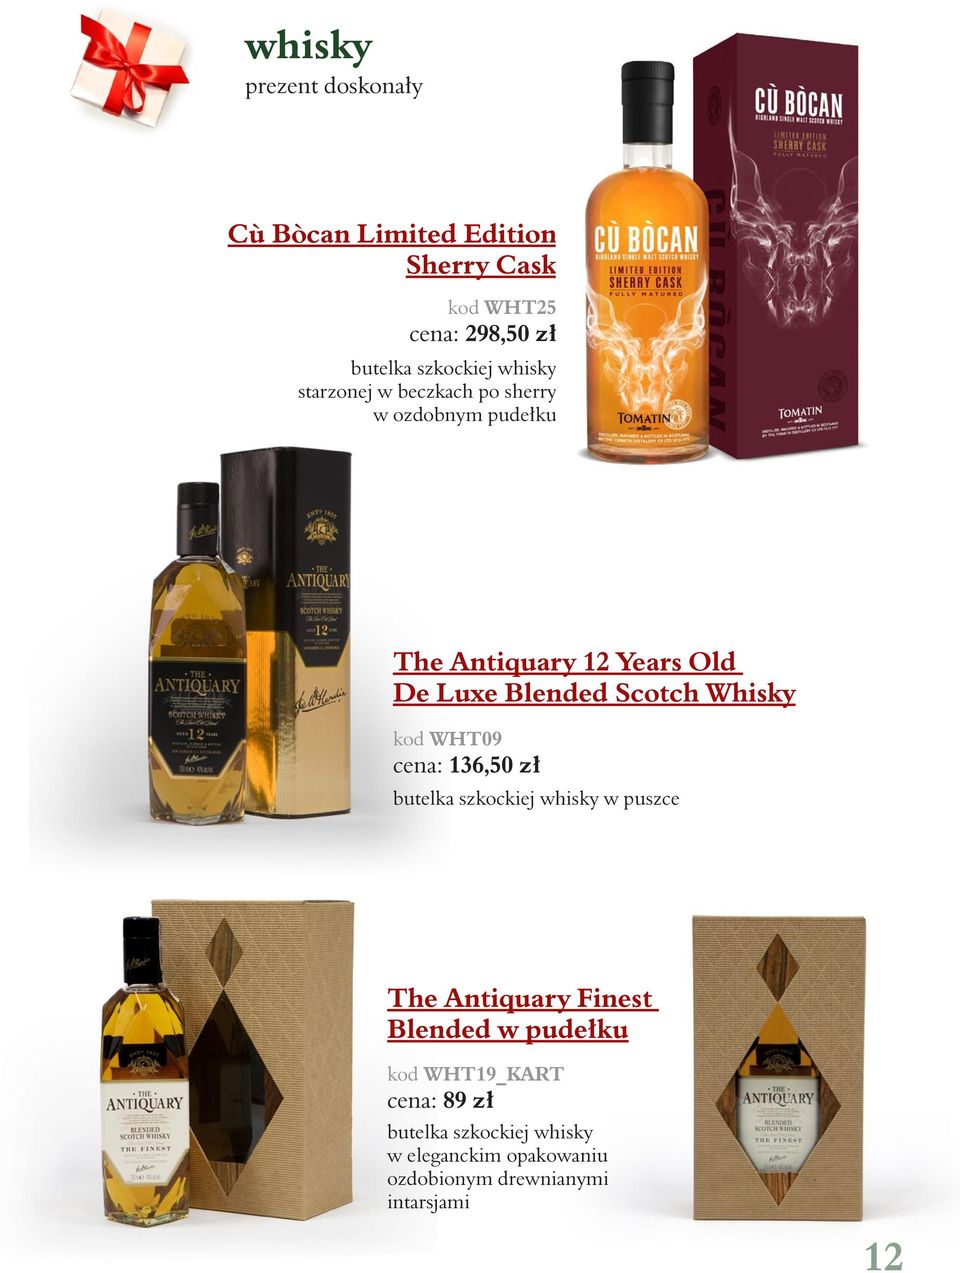 Whisky kod WHT09 cena: 136,50 zł butelka szkockiej whisky w puszce The Antiquary Finest Blended w pudełku